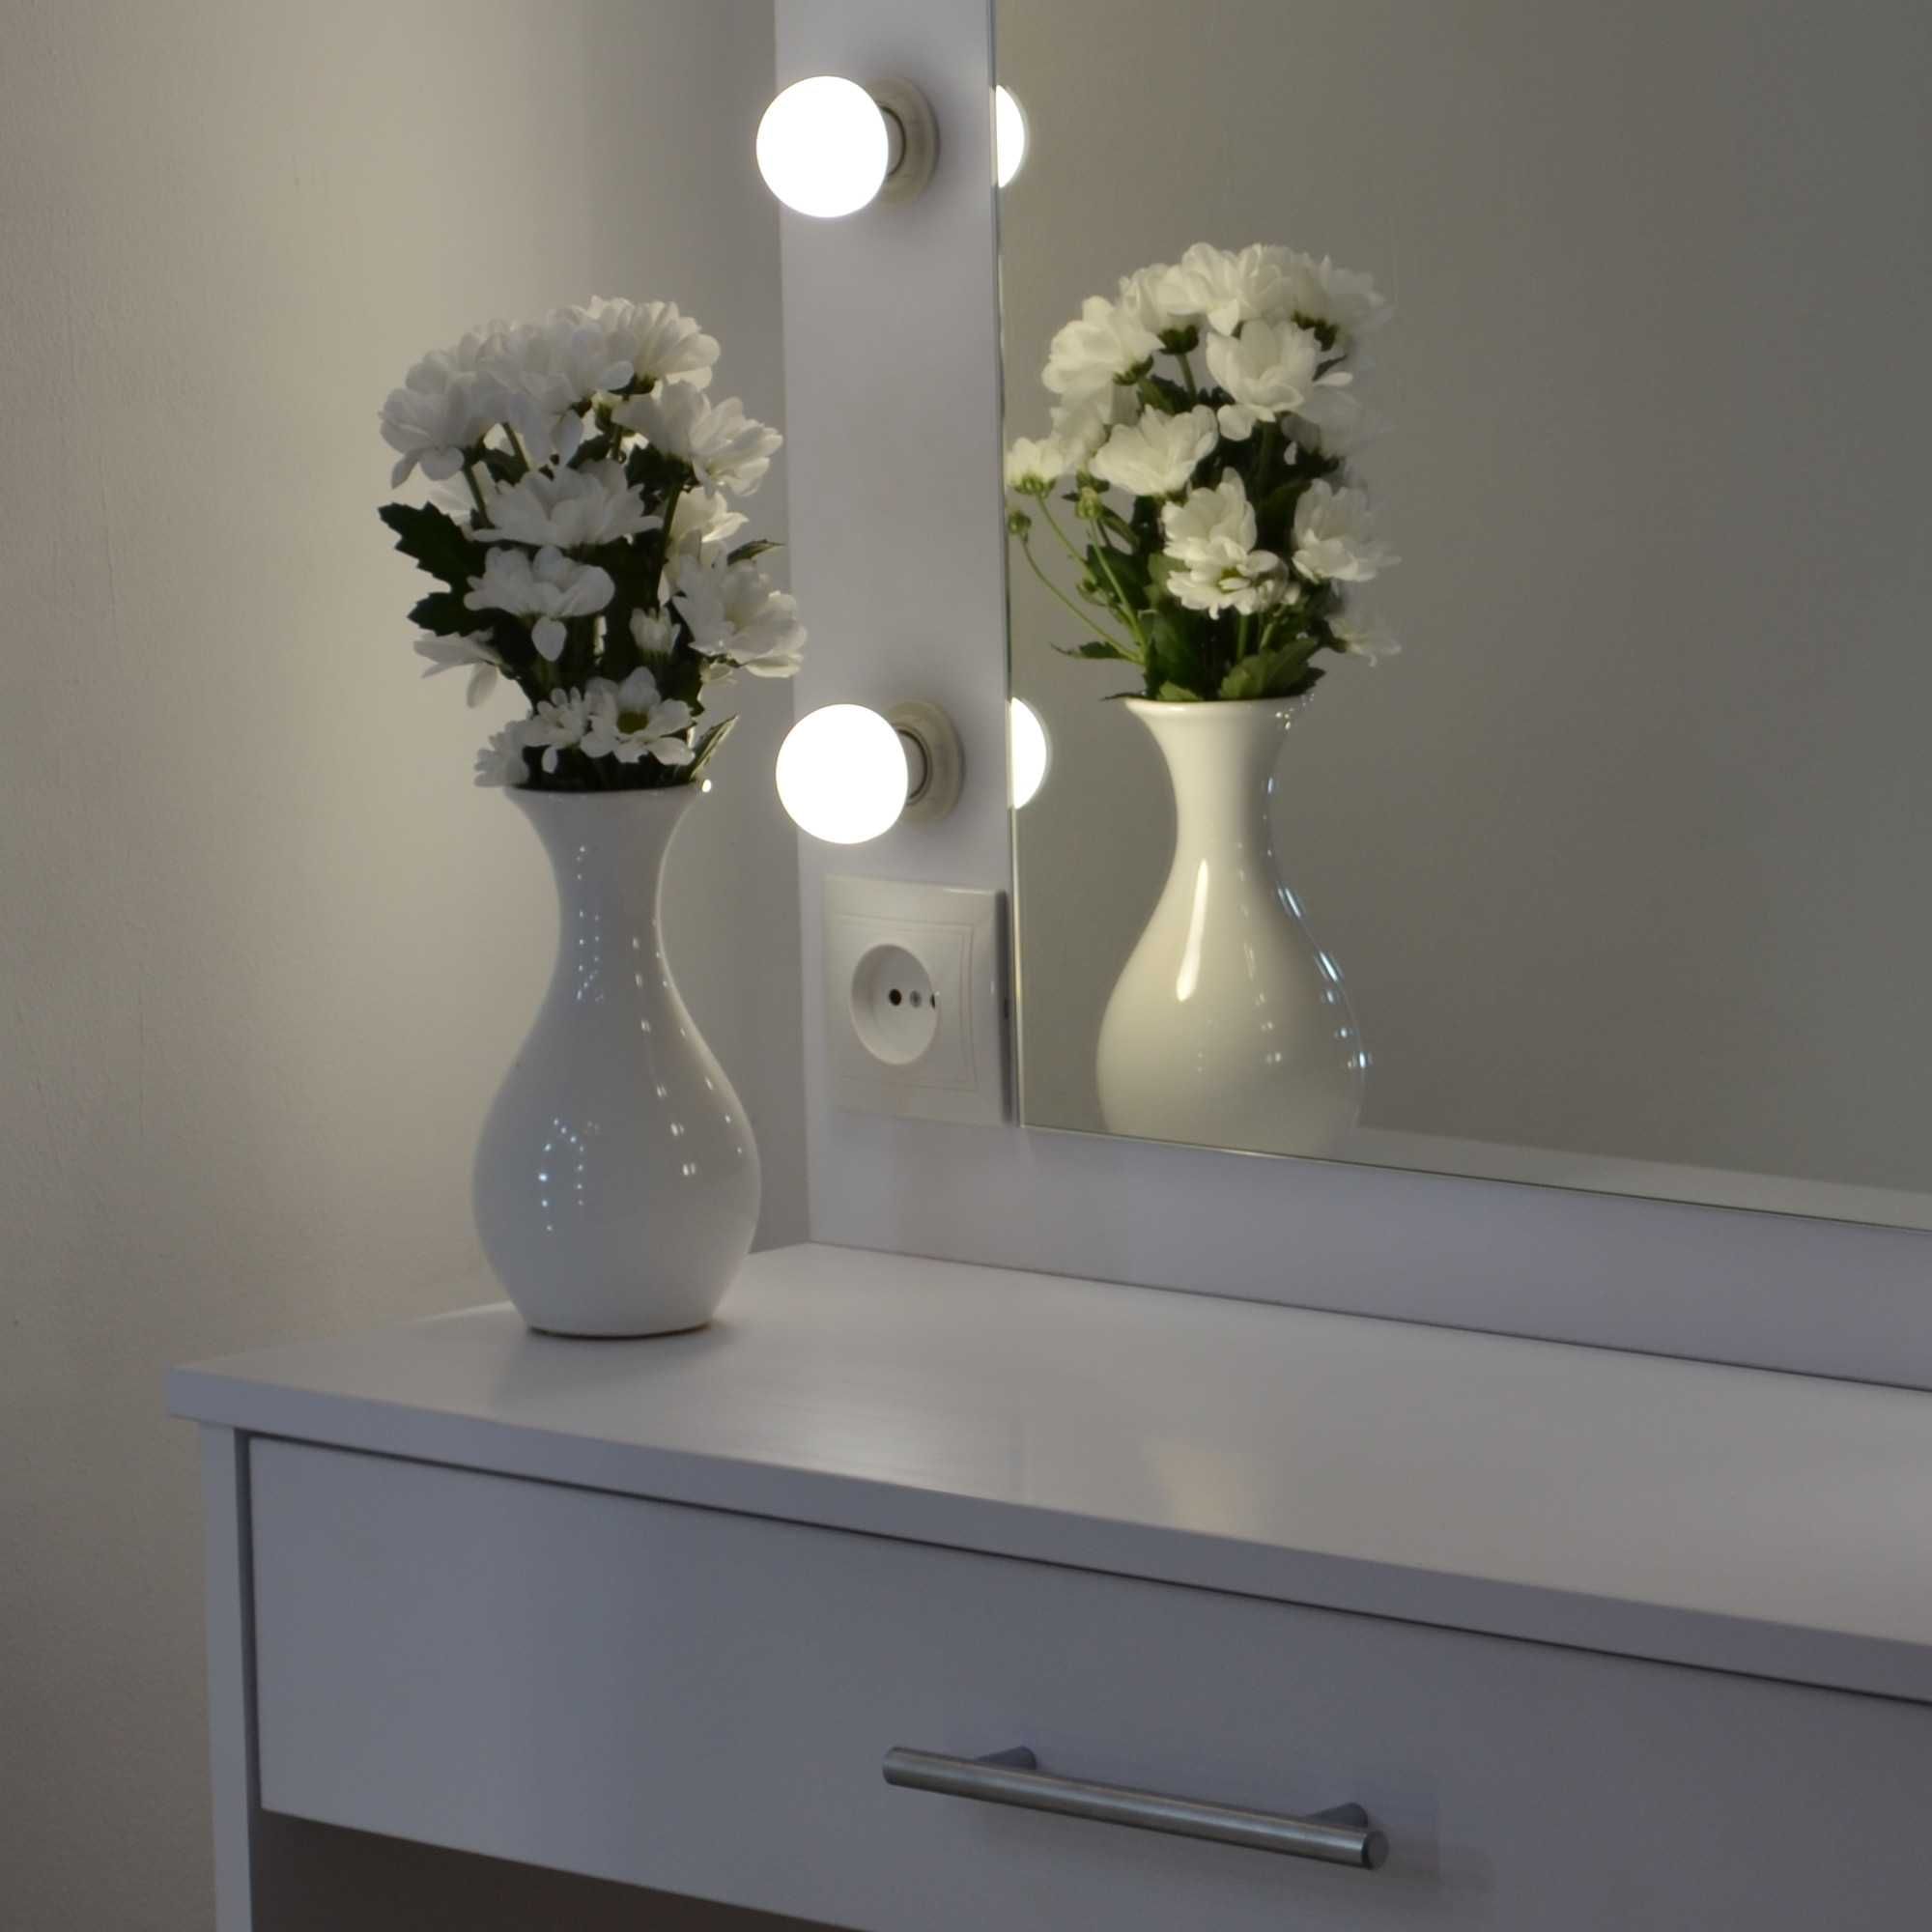 Туалетный столик с зеркалом и подсветкой место для визажиста